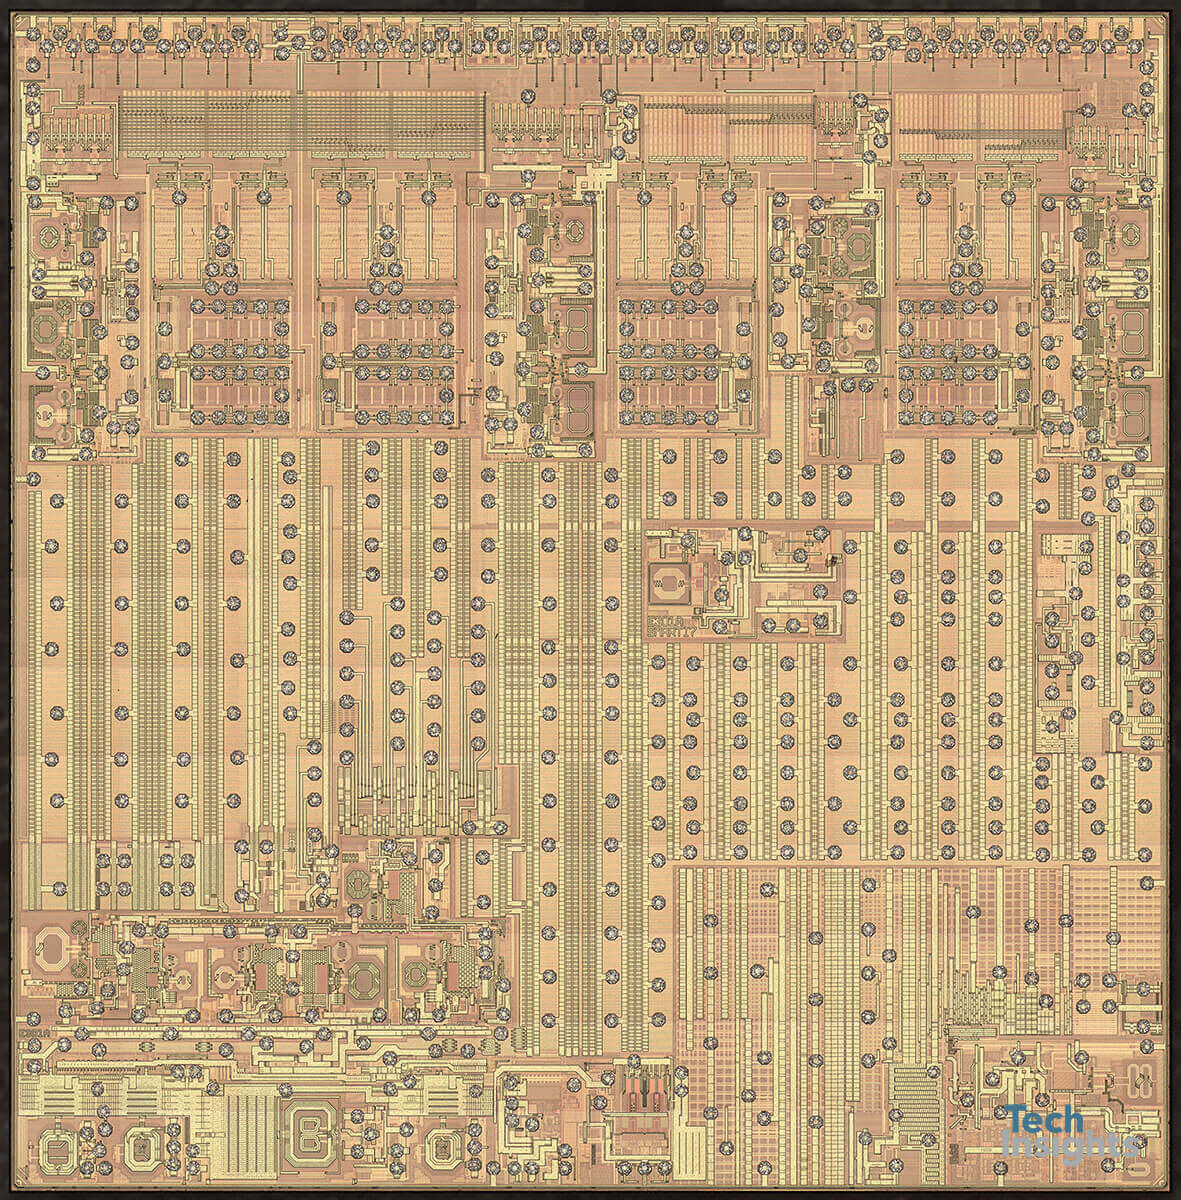 Intel PMB5762